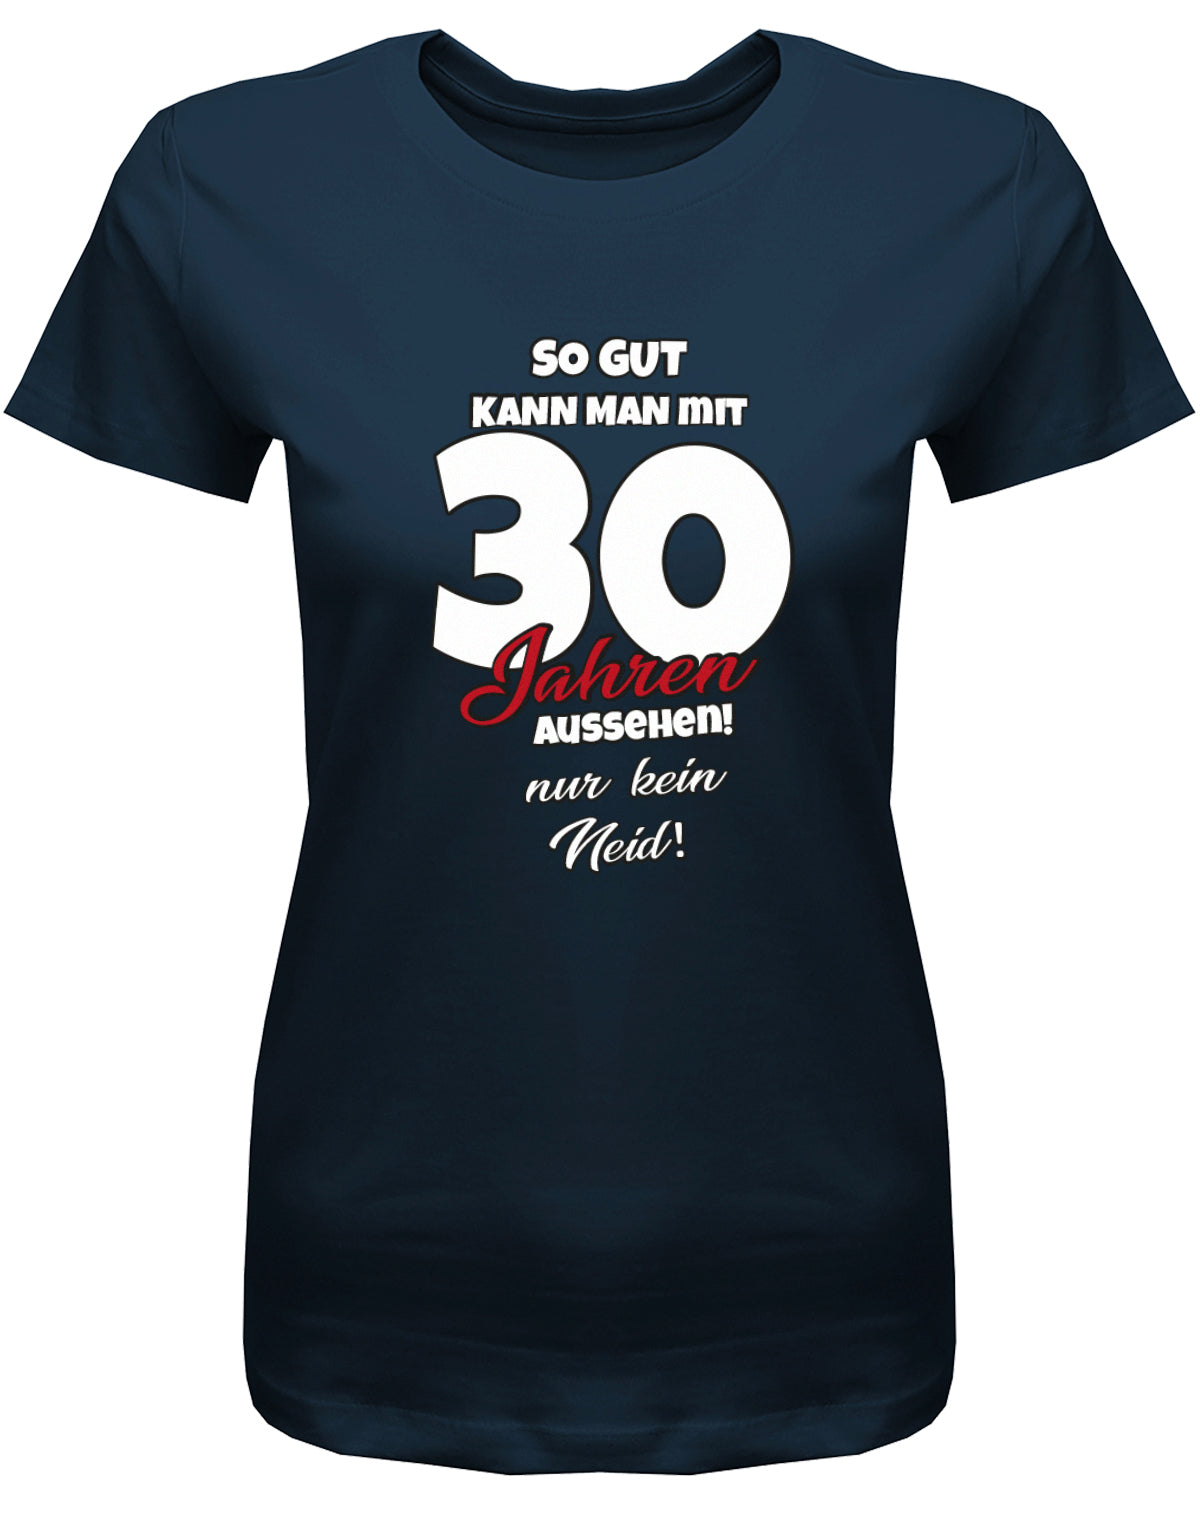 Lustiges T-Shirt zum 30 Geburtstag für die Frau Bedruckt mit So gut kann man mit 30 Jahren aussehen! Nur kein Neid! Navy